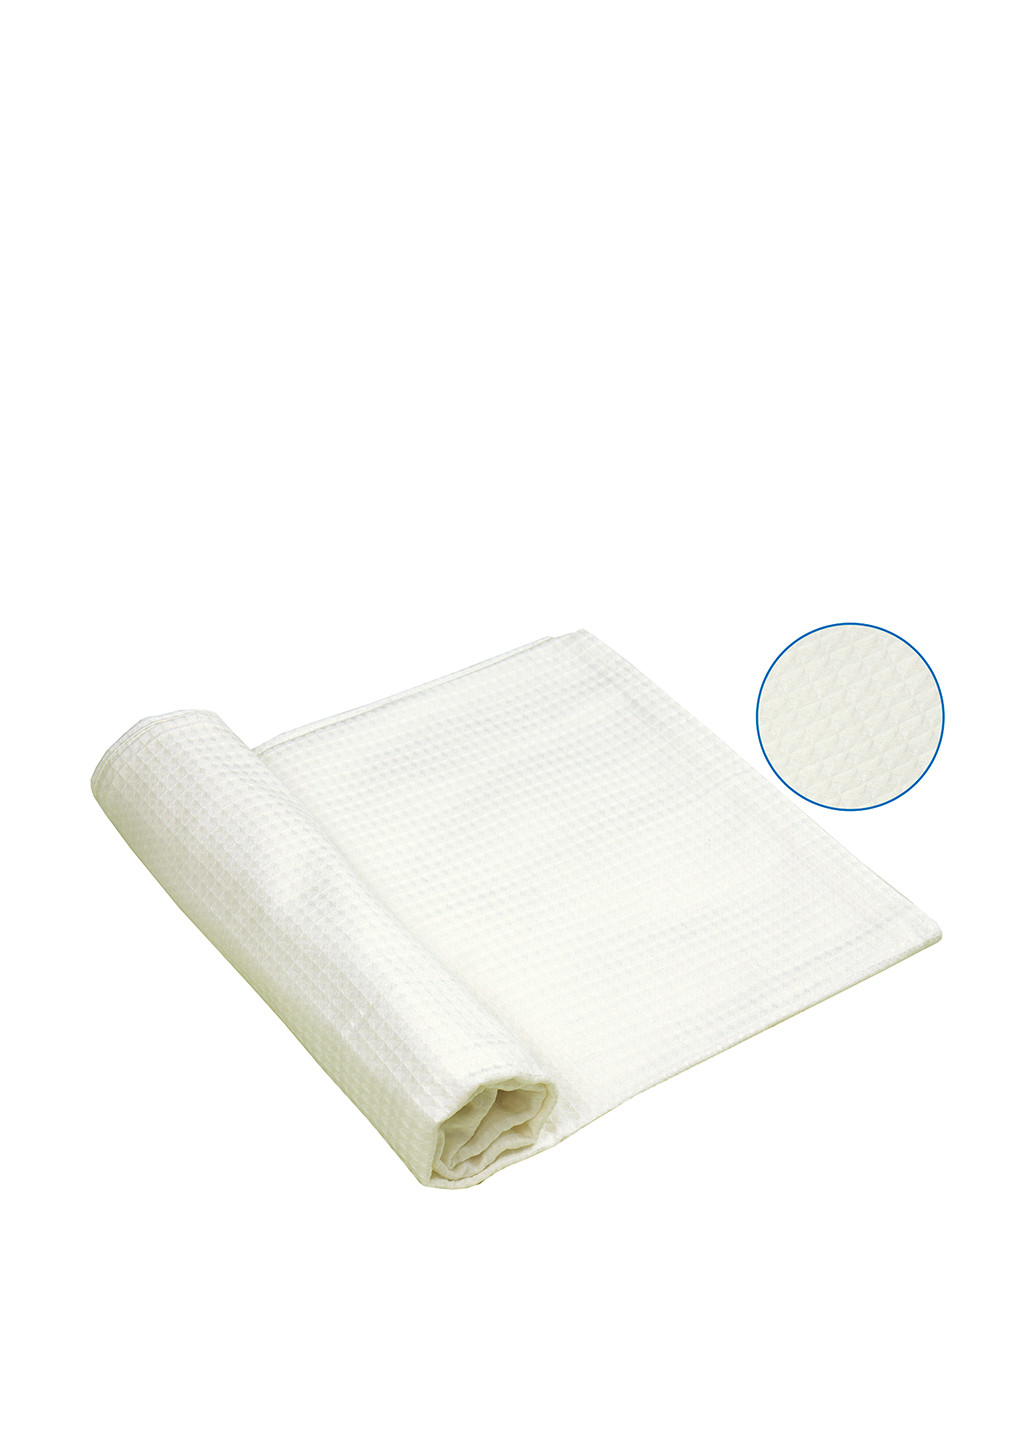 Руно полотенце для сауны, 100х150 см білий виробництво - Україна